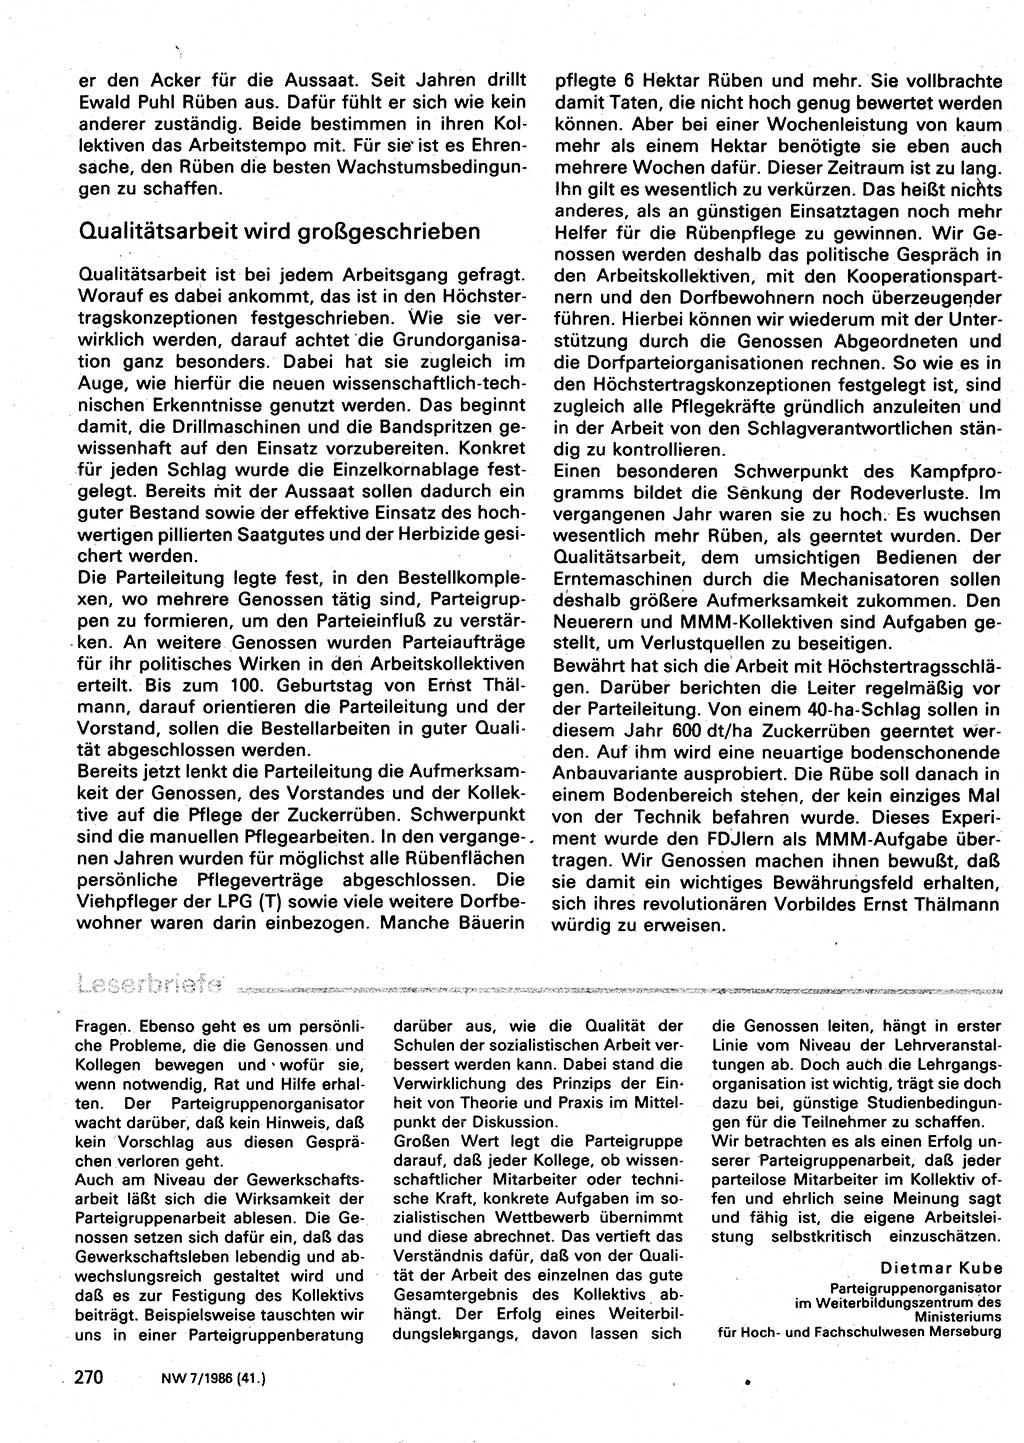 Neuer Weg (NW), Organ des Zentralkomitees (ZK) der SED (Sozialistische Einheitspartei Deutschlands) für Fragen des Parteilebens, 41. Jahrgang [Deutsche Demokratische Republik (DDR)] 1986, Seite 270 (NW ZK SED DDR 1986, S. 270)